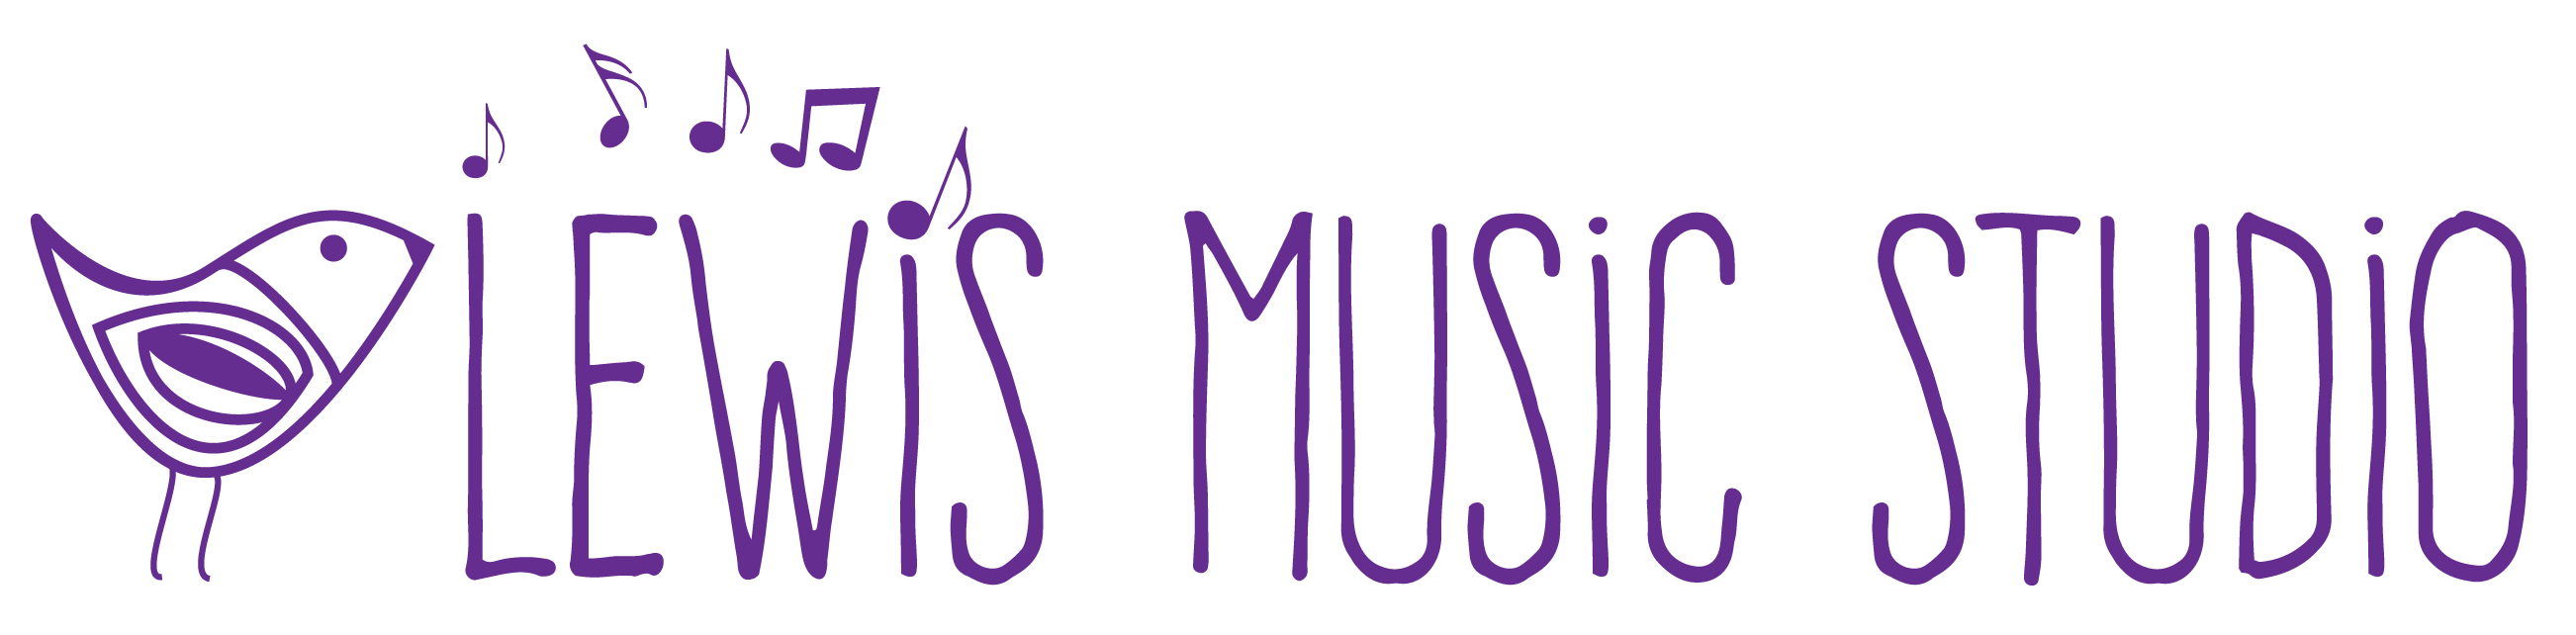 https://lewismusicstudio.net/wp-content/uploads/2020/01/LMS-Purple.png